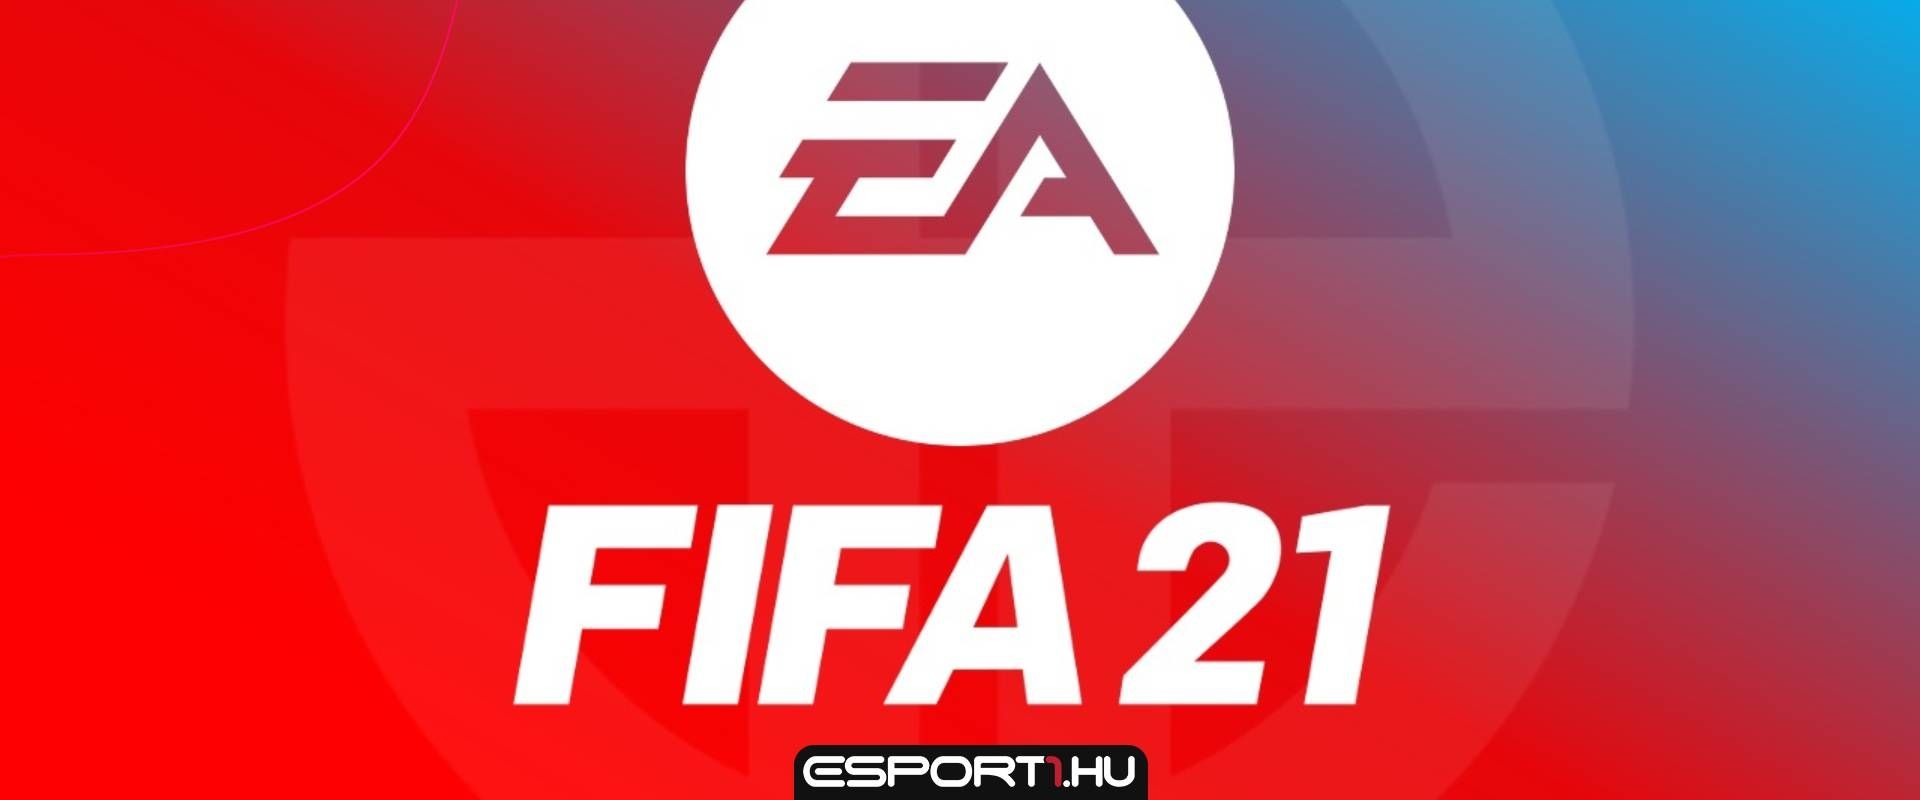 Íme az első trailer a FIFA21-ről, és némi információt is megosztottak az újdonságokról